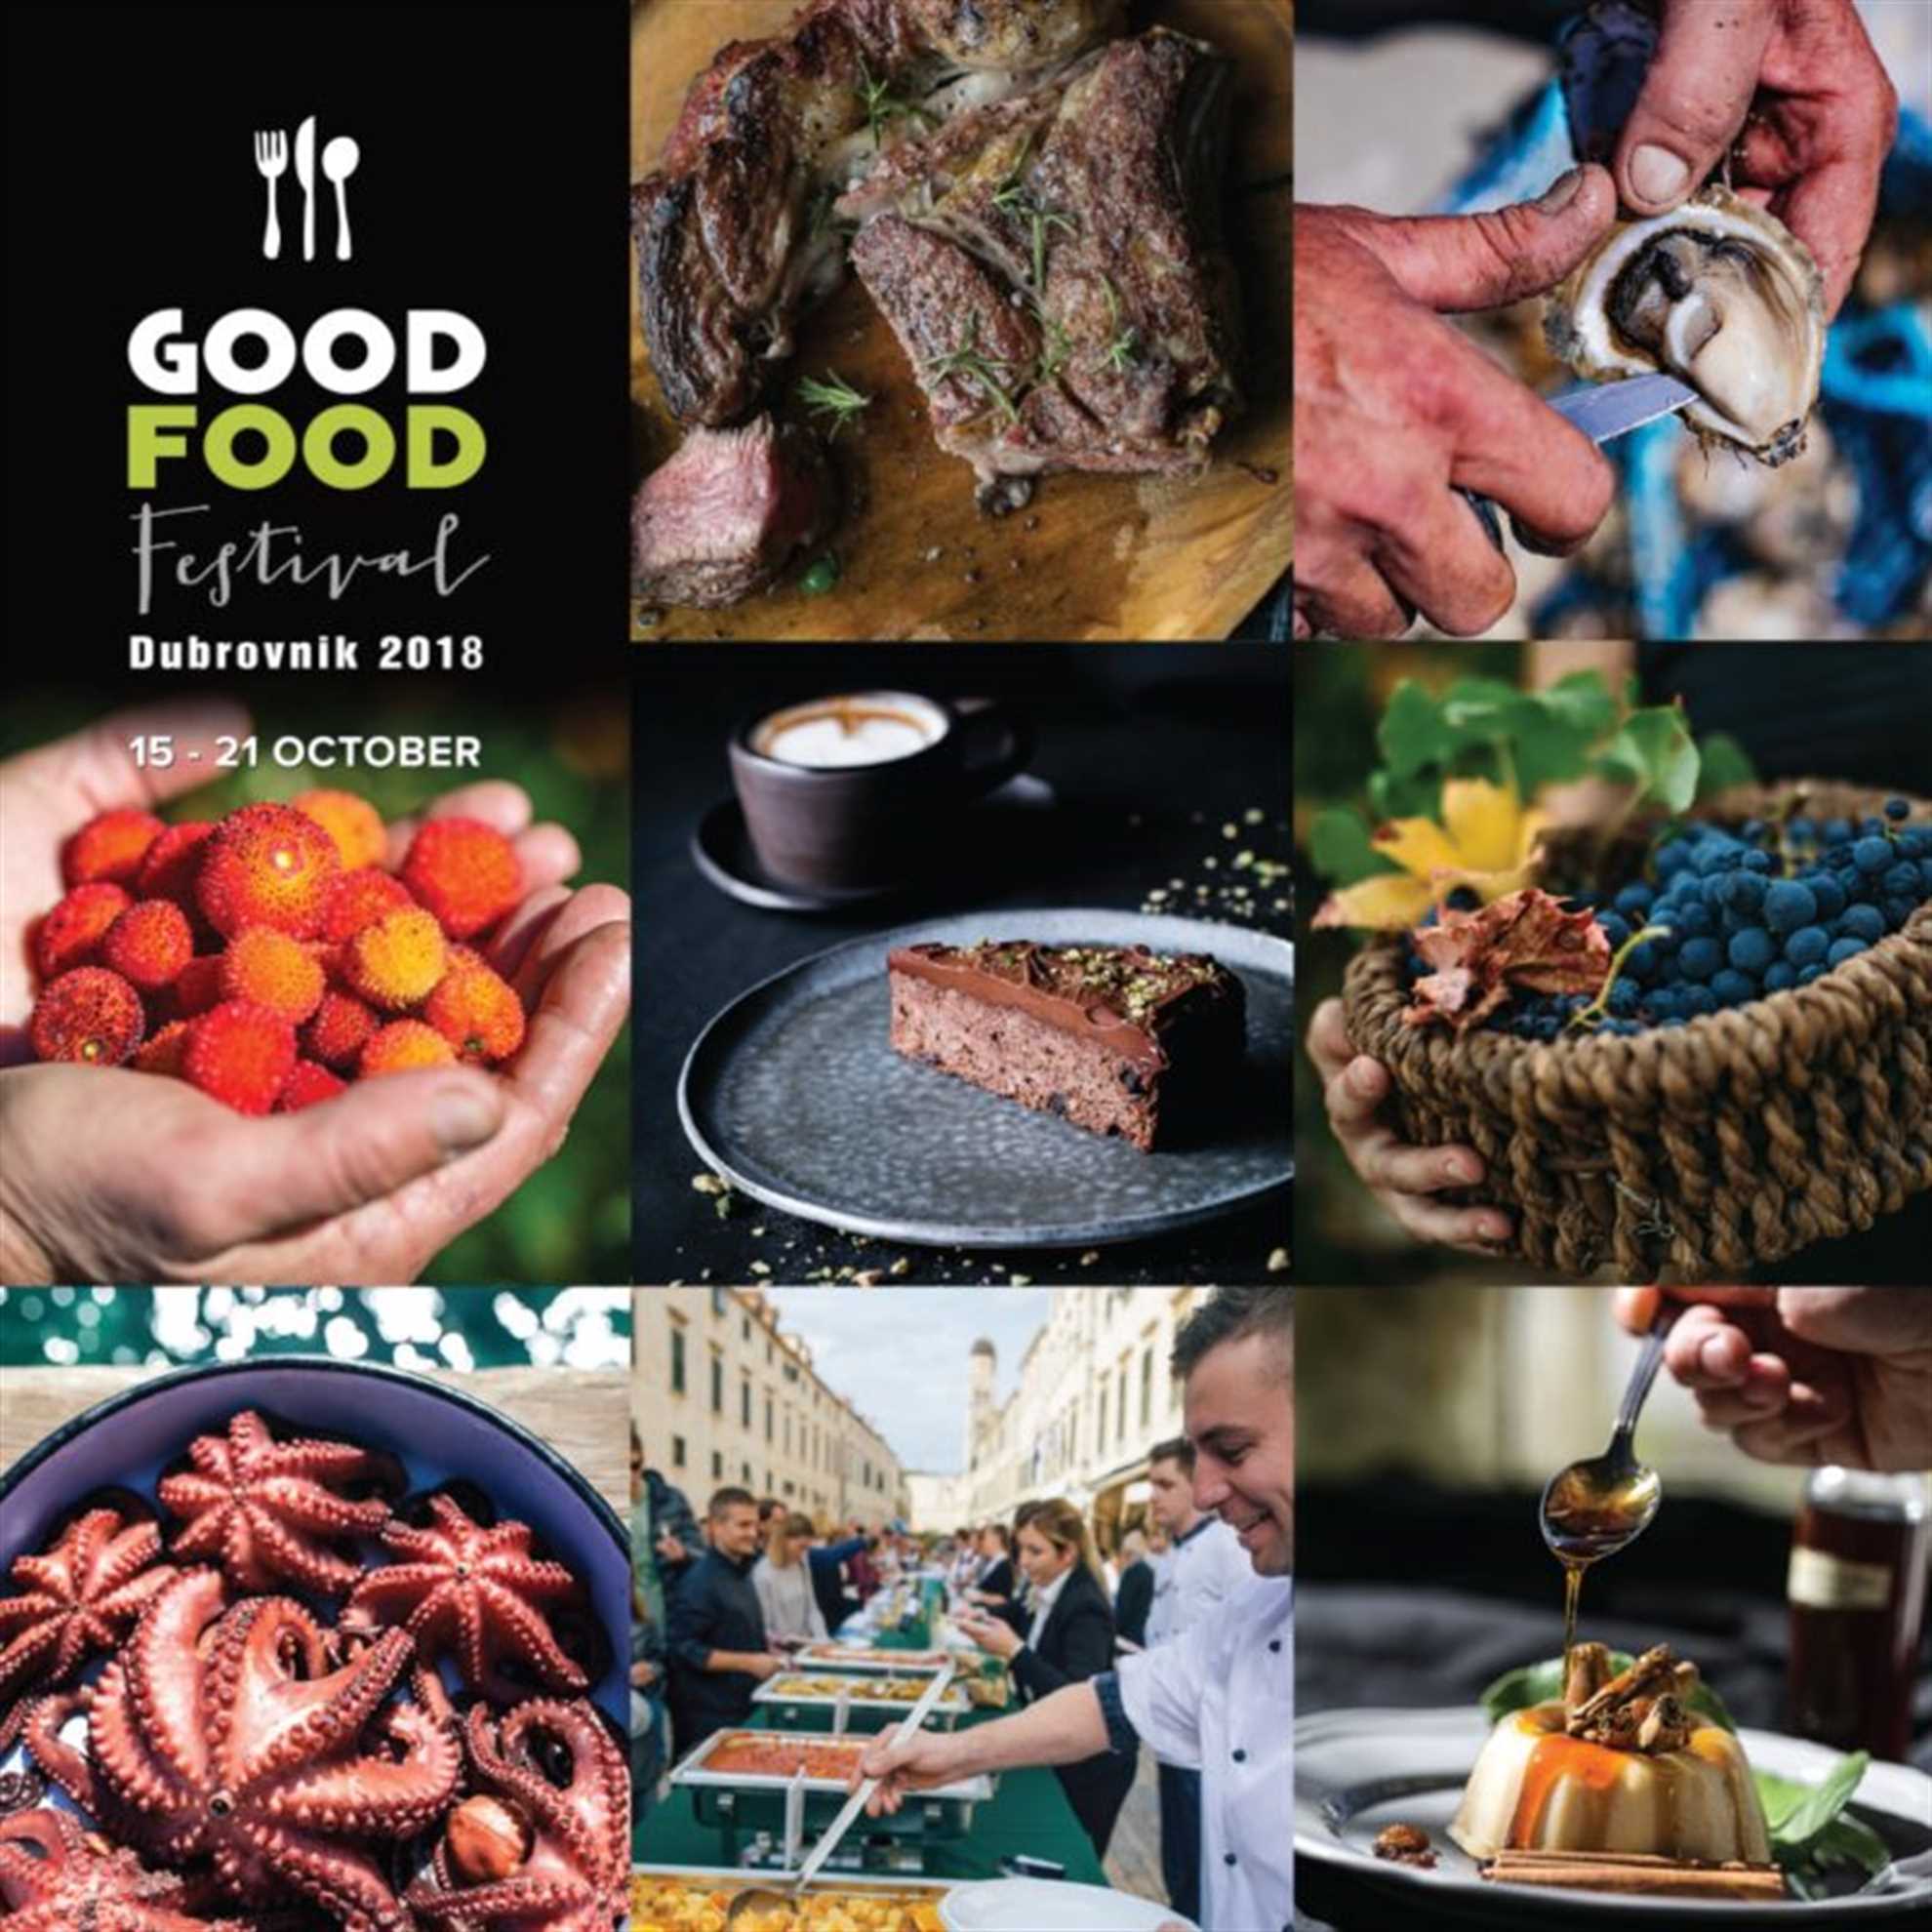 Good Food Dubrovnik 2018 Festival program by Dubrovnik Tourist Board